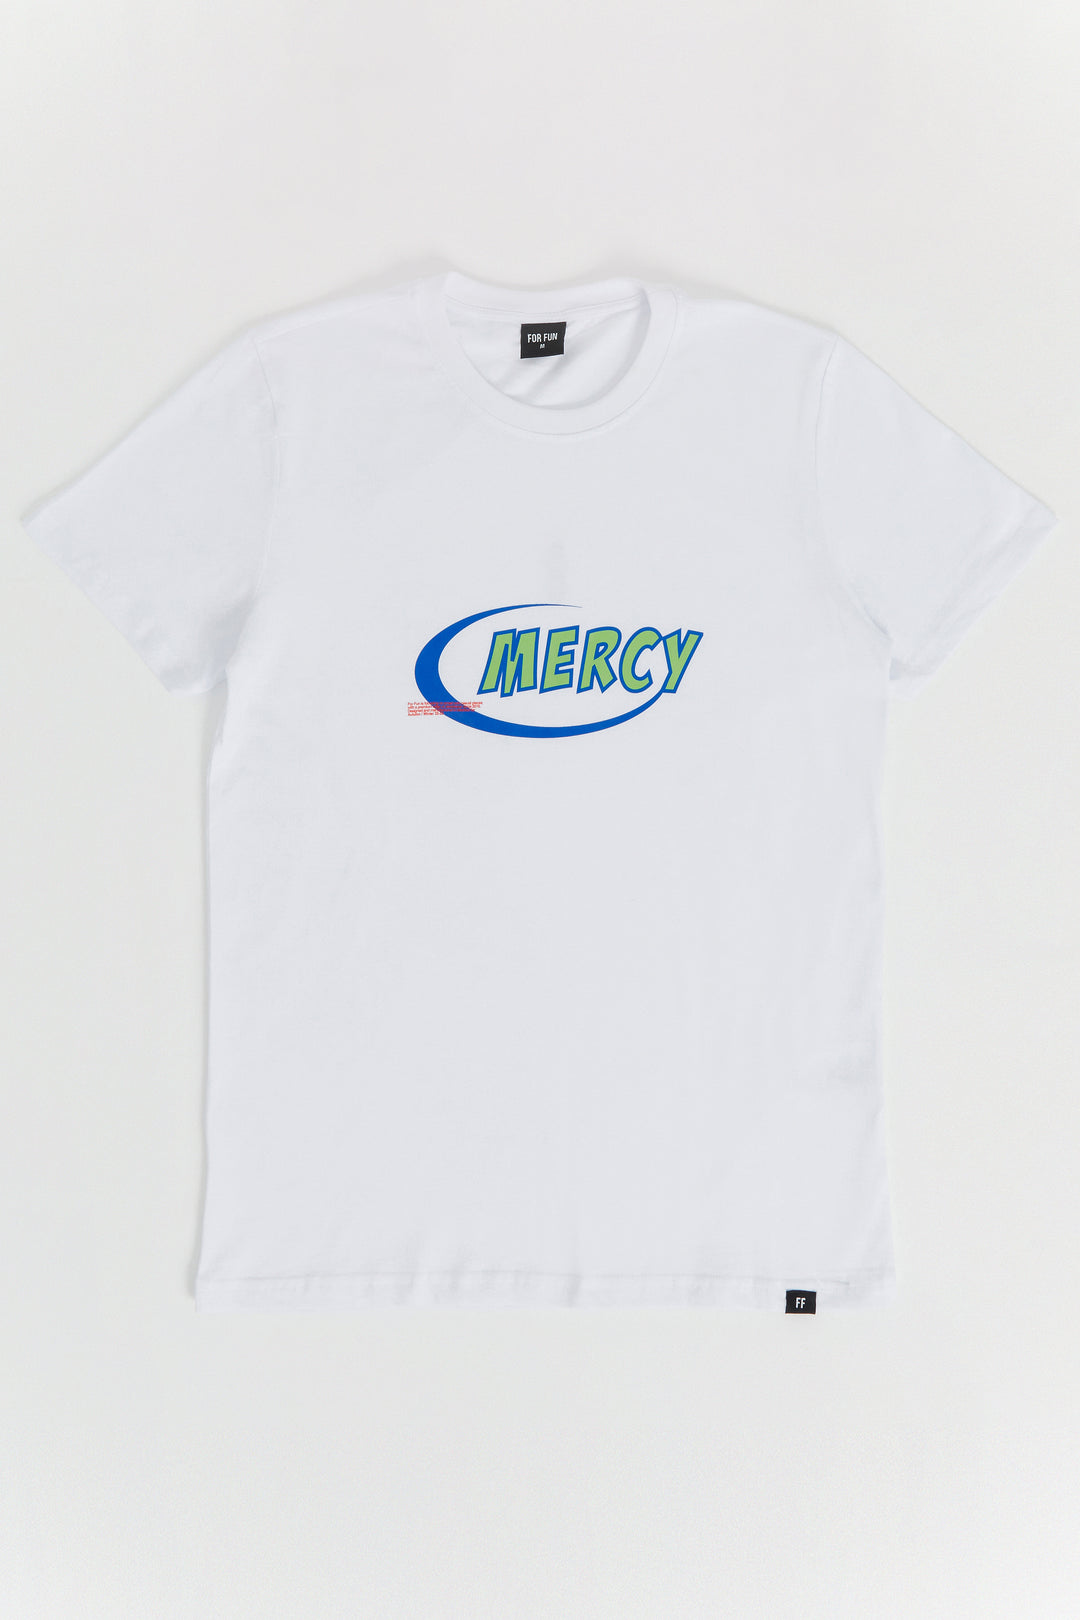 Mercy / T-shirt